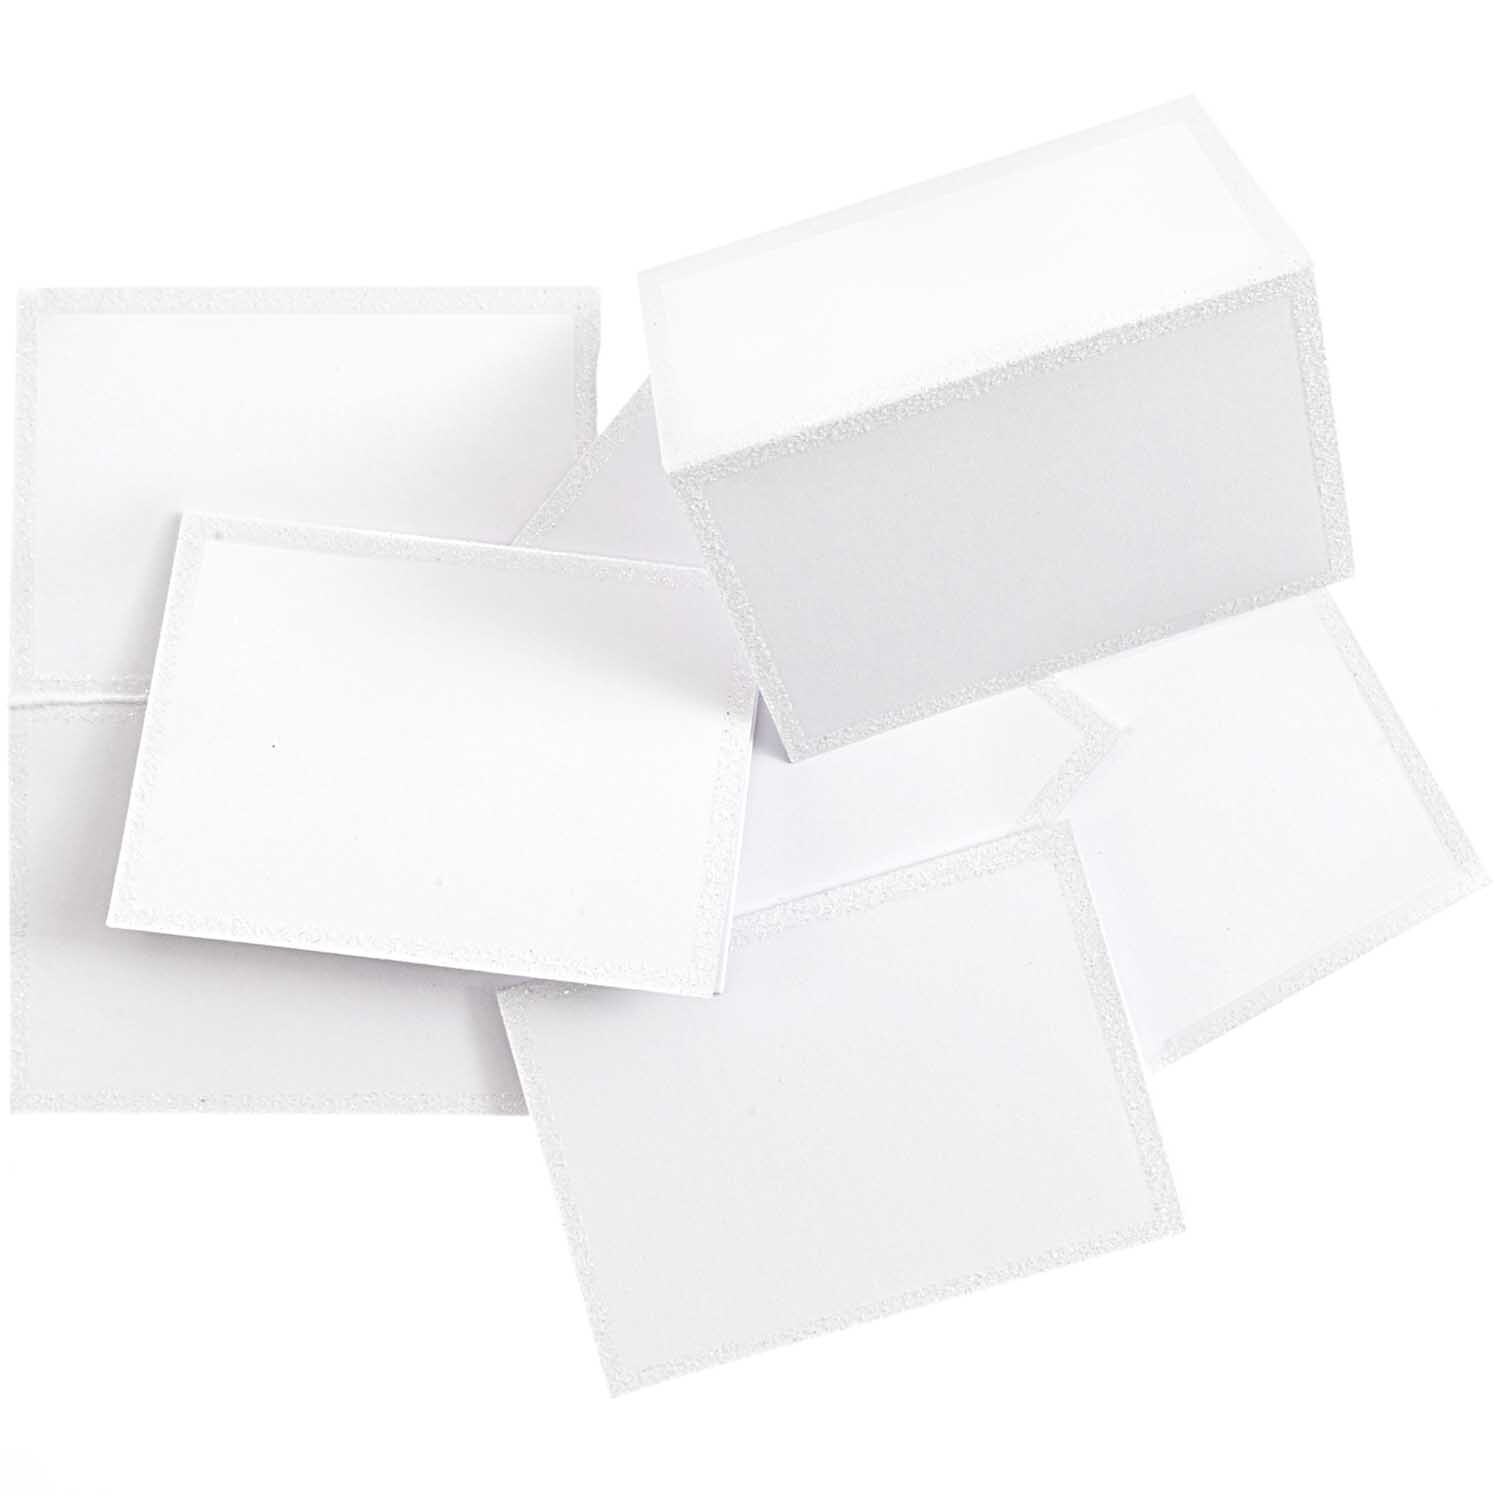 Paper Poetry Tischkarten weiß-glitter 9x12,7cm 6 Stück